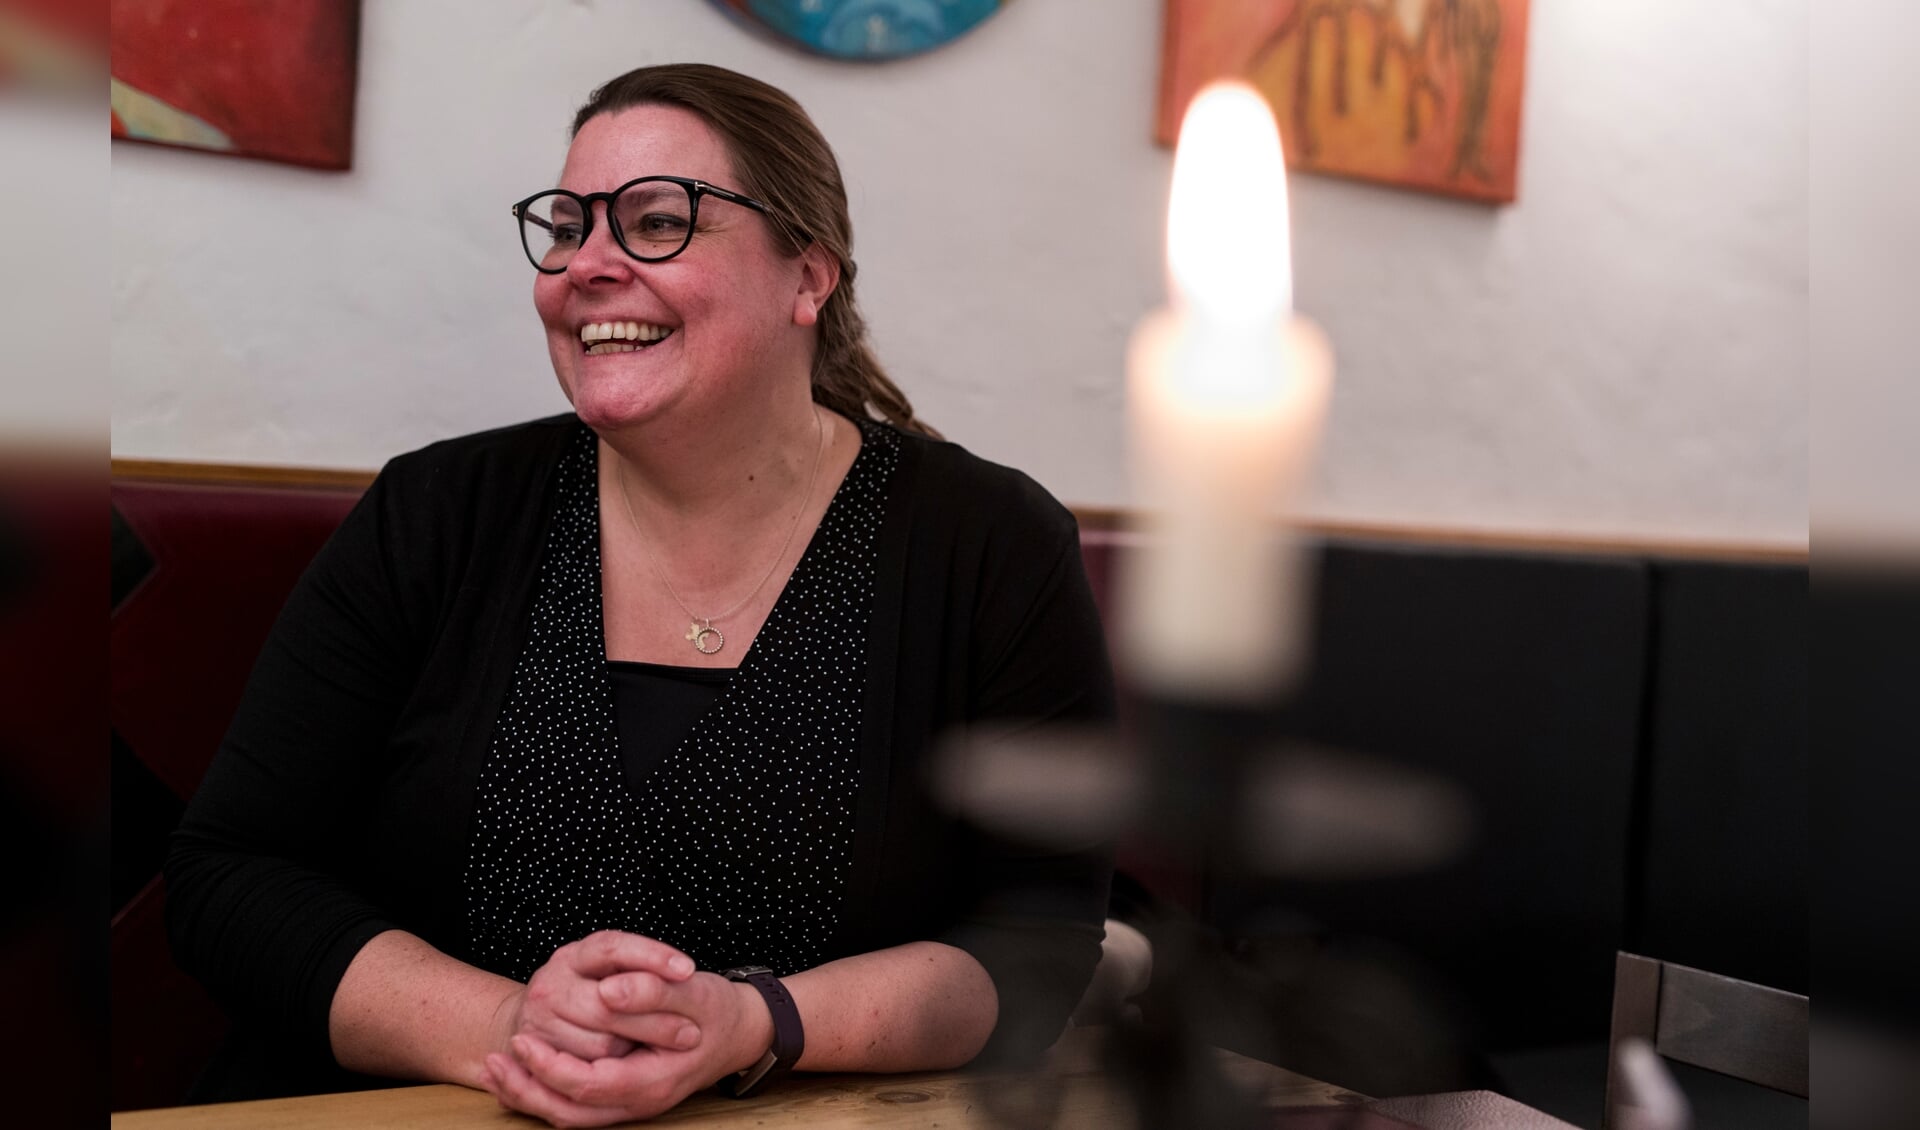 Mai-Britt Josephsen Knudsen startede som præst i Helligåndskirken i februar 2020, kort før den første nedlukning. Hun glæder sig til en tid, hvor det bliver muligt at møde sin menighed til kaffebord, sang og smalltalk. 